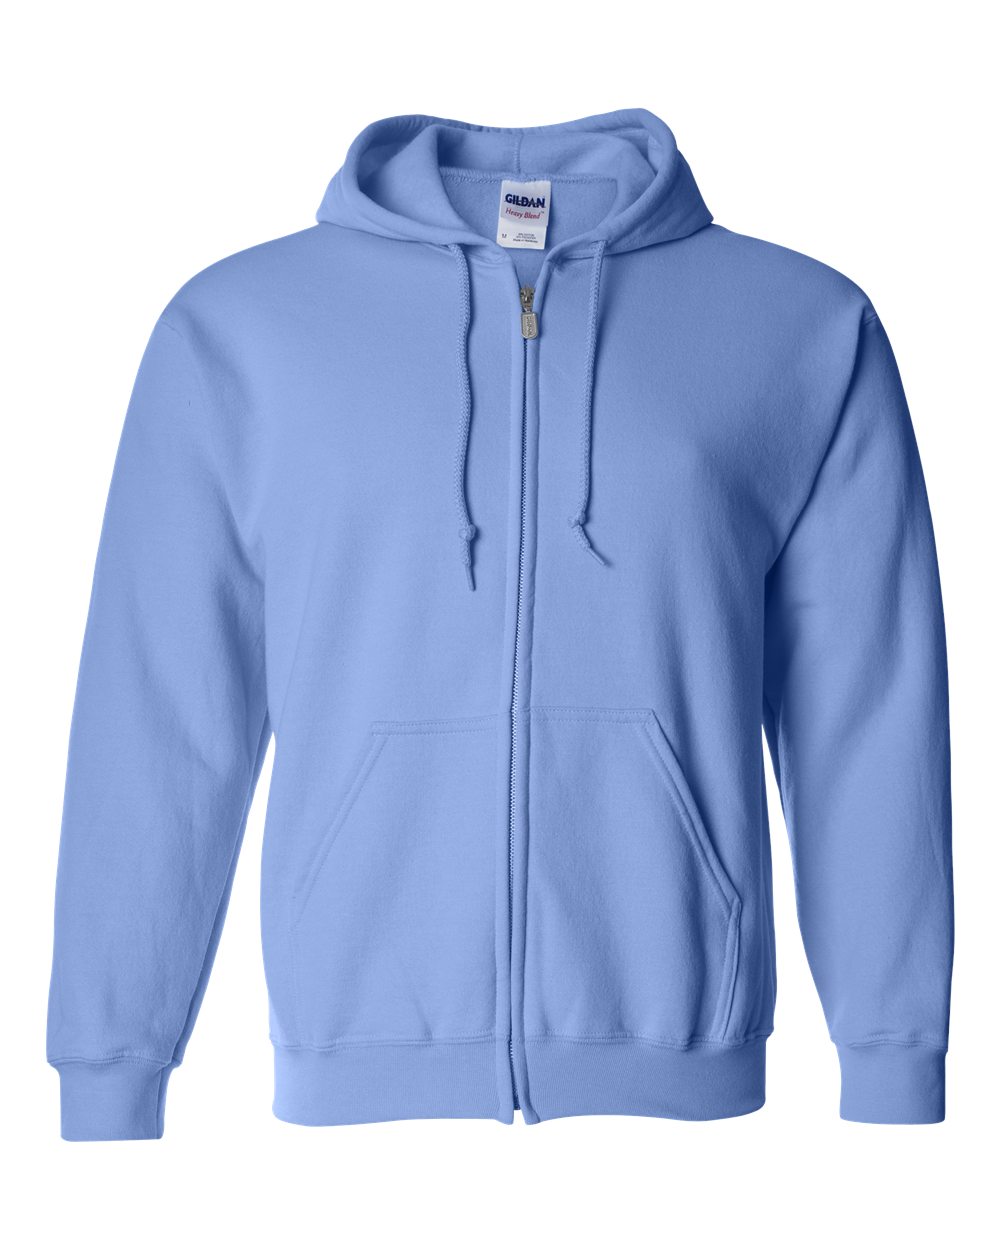 Gildan Mens Blank Heavy Blend Full-Zip Hooded Sweatshirt 18600 up to ...